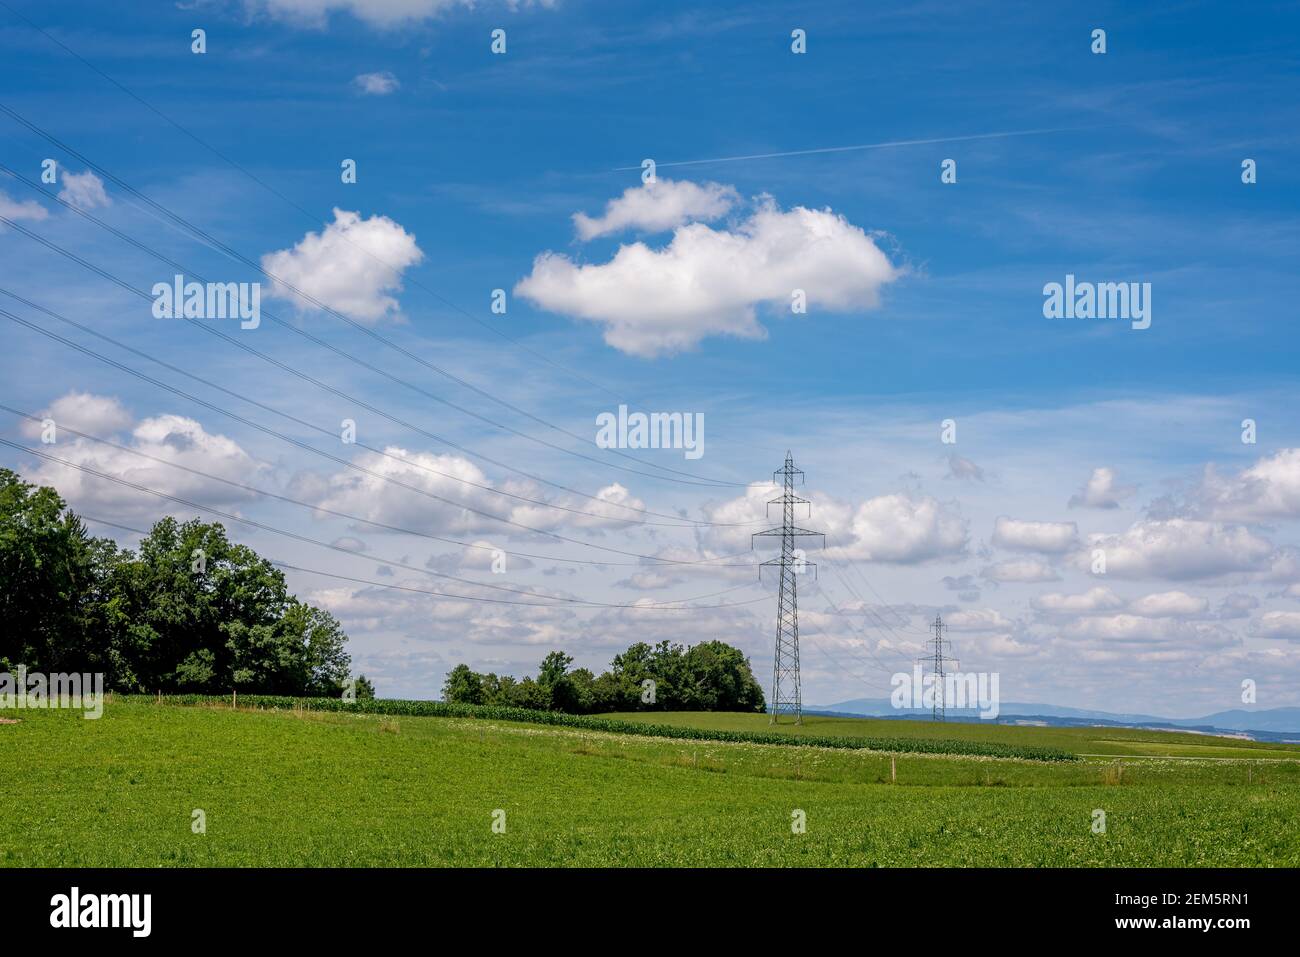 Piloni ad alta tensione e fili sul campo. Paesaggio con campo agricolo, alberi, cielo e nuvole. Vevey, Svizzera. Scena tranquilla. Foto Stock